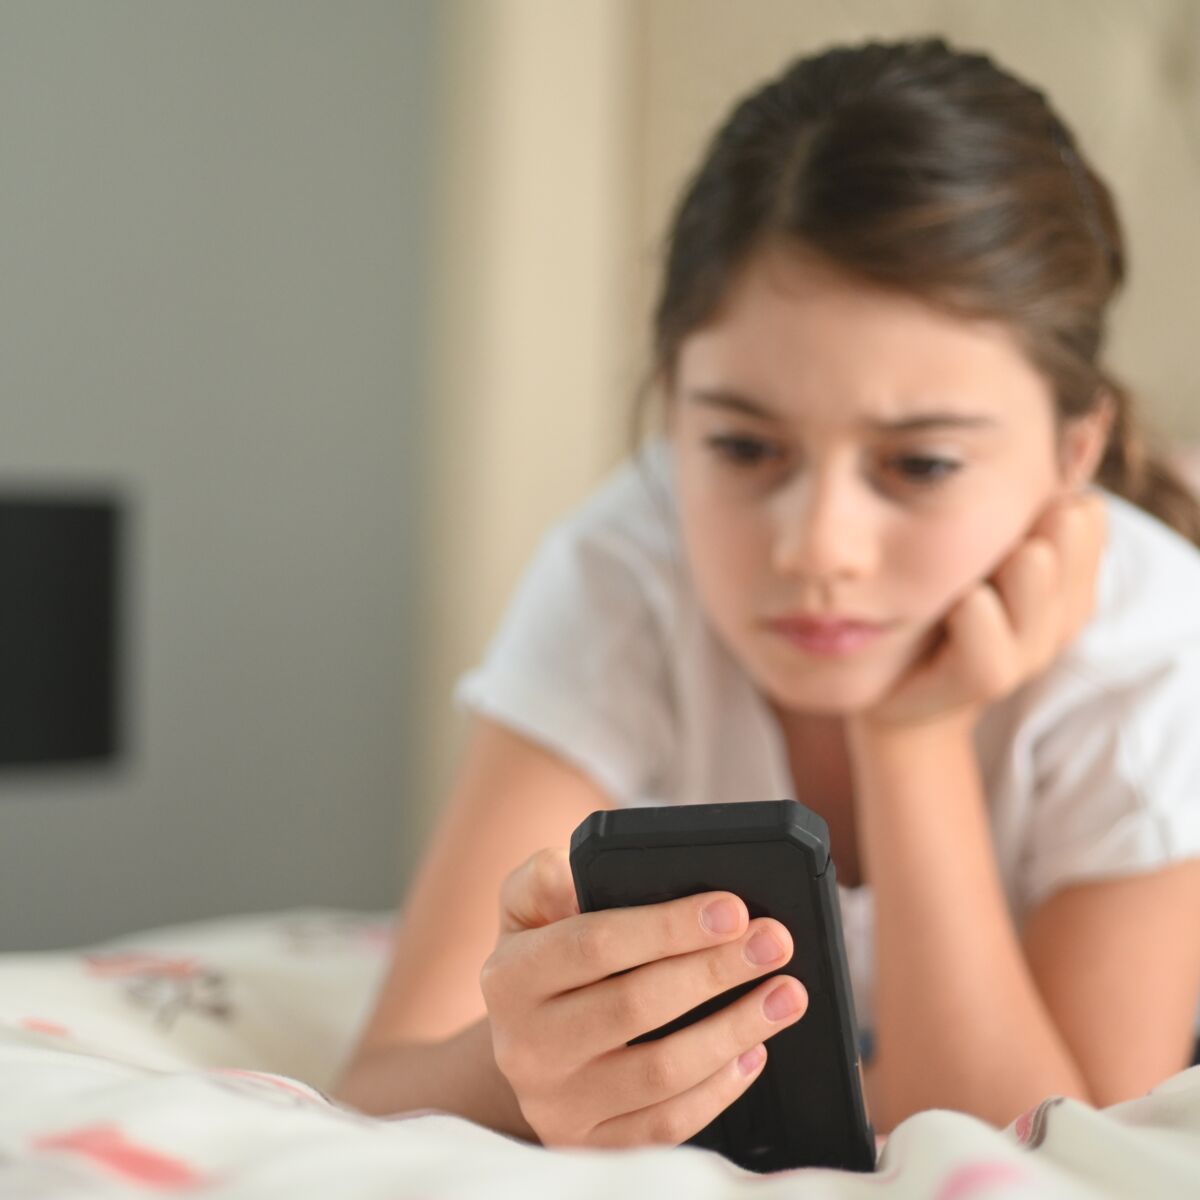 Ecrans : l'âge du premier smartphone chez l'enfant impacterait la